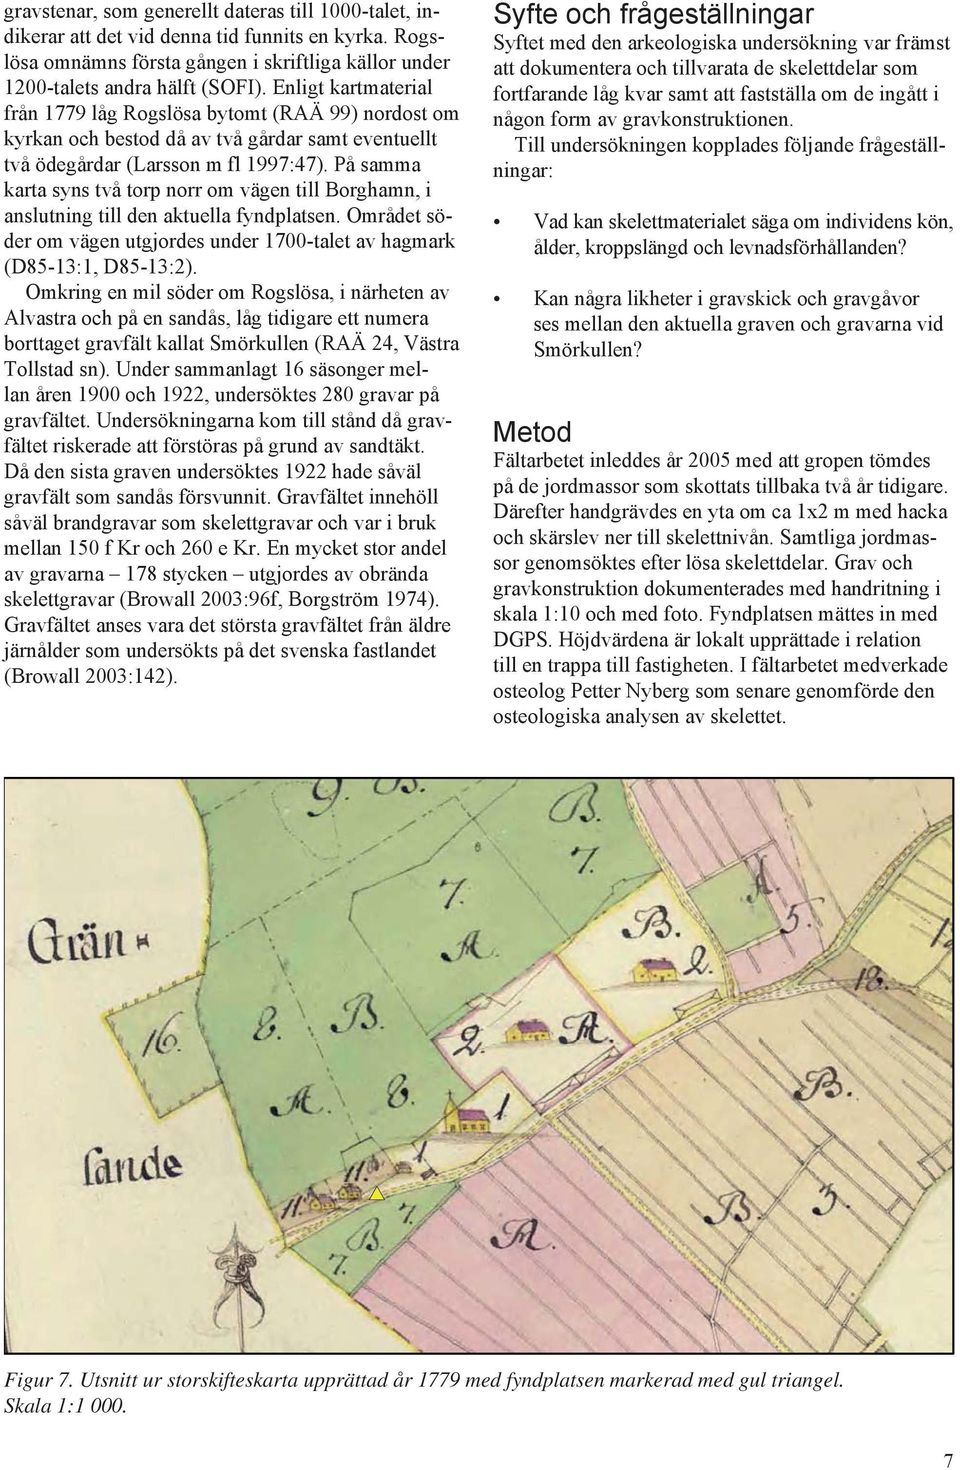 På samma karta syns två torp norr om vägen till Borghamn, i anslutning till den aktuella fyndplatsen. Området söder om vägen utgjordes under 1700-talet av hagmark (D85-13:1, D85-13:2).